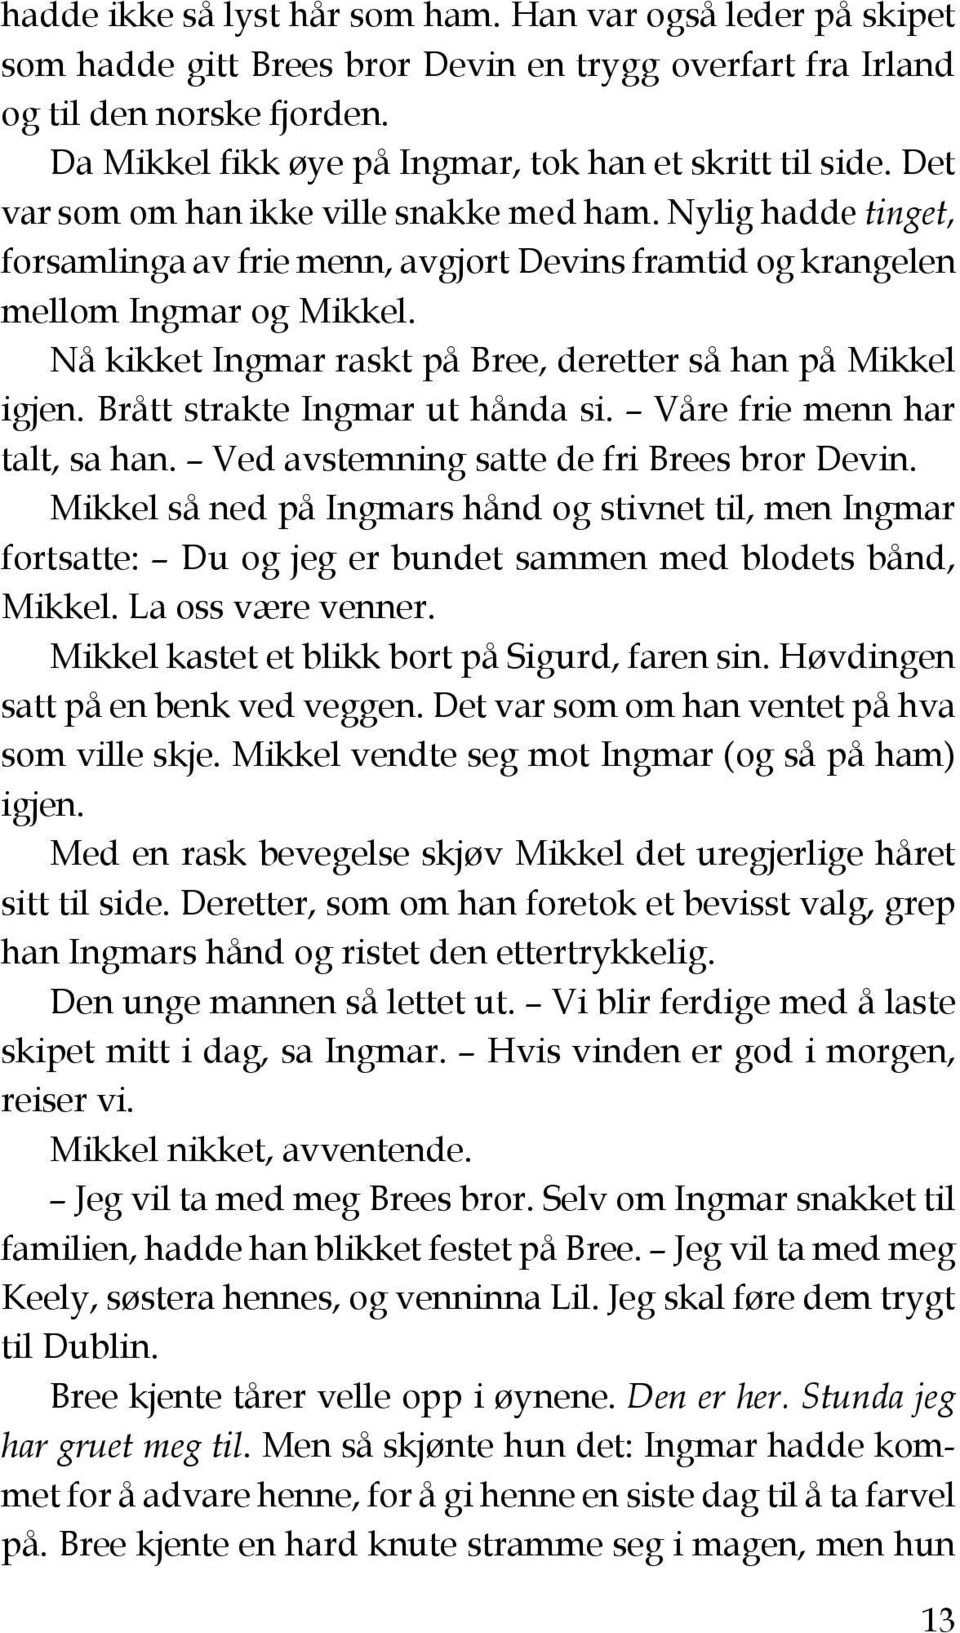 Nylig hadde tinget, forsamlinga av frie menn, avgjort Devins framtid og krangelen mellom Ingmar og Mikkel. Nå kikket Ingmar raskt på Bree, deretter så han på Mikkel igjen.